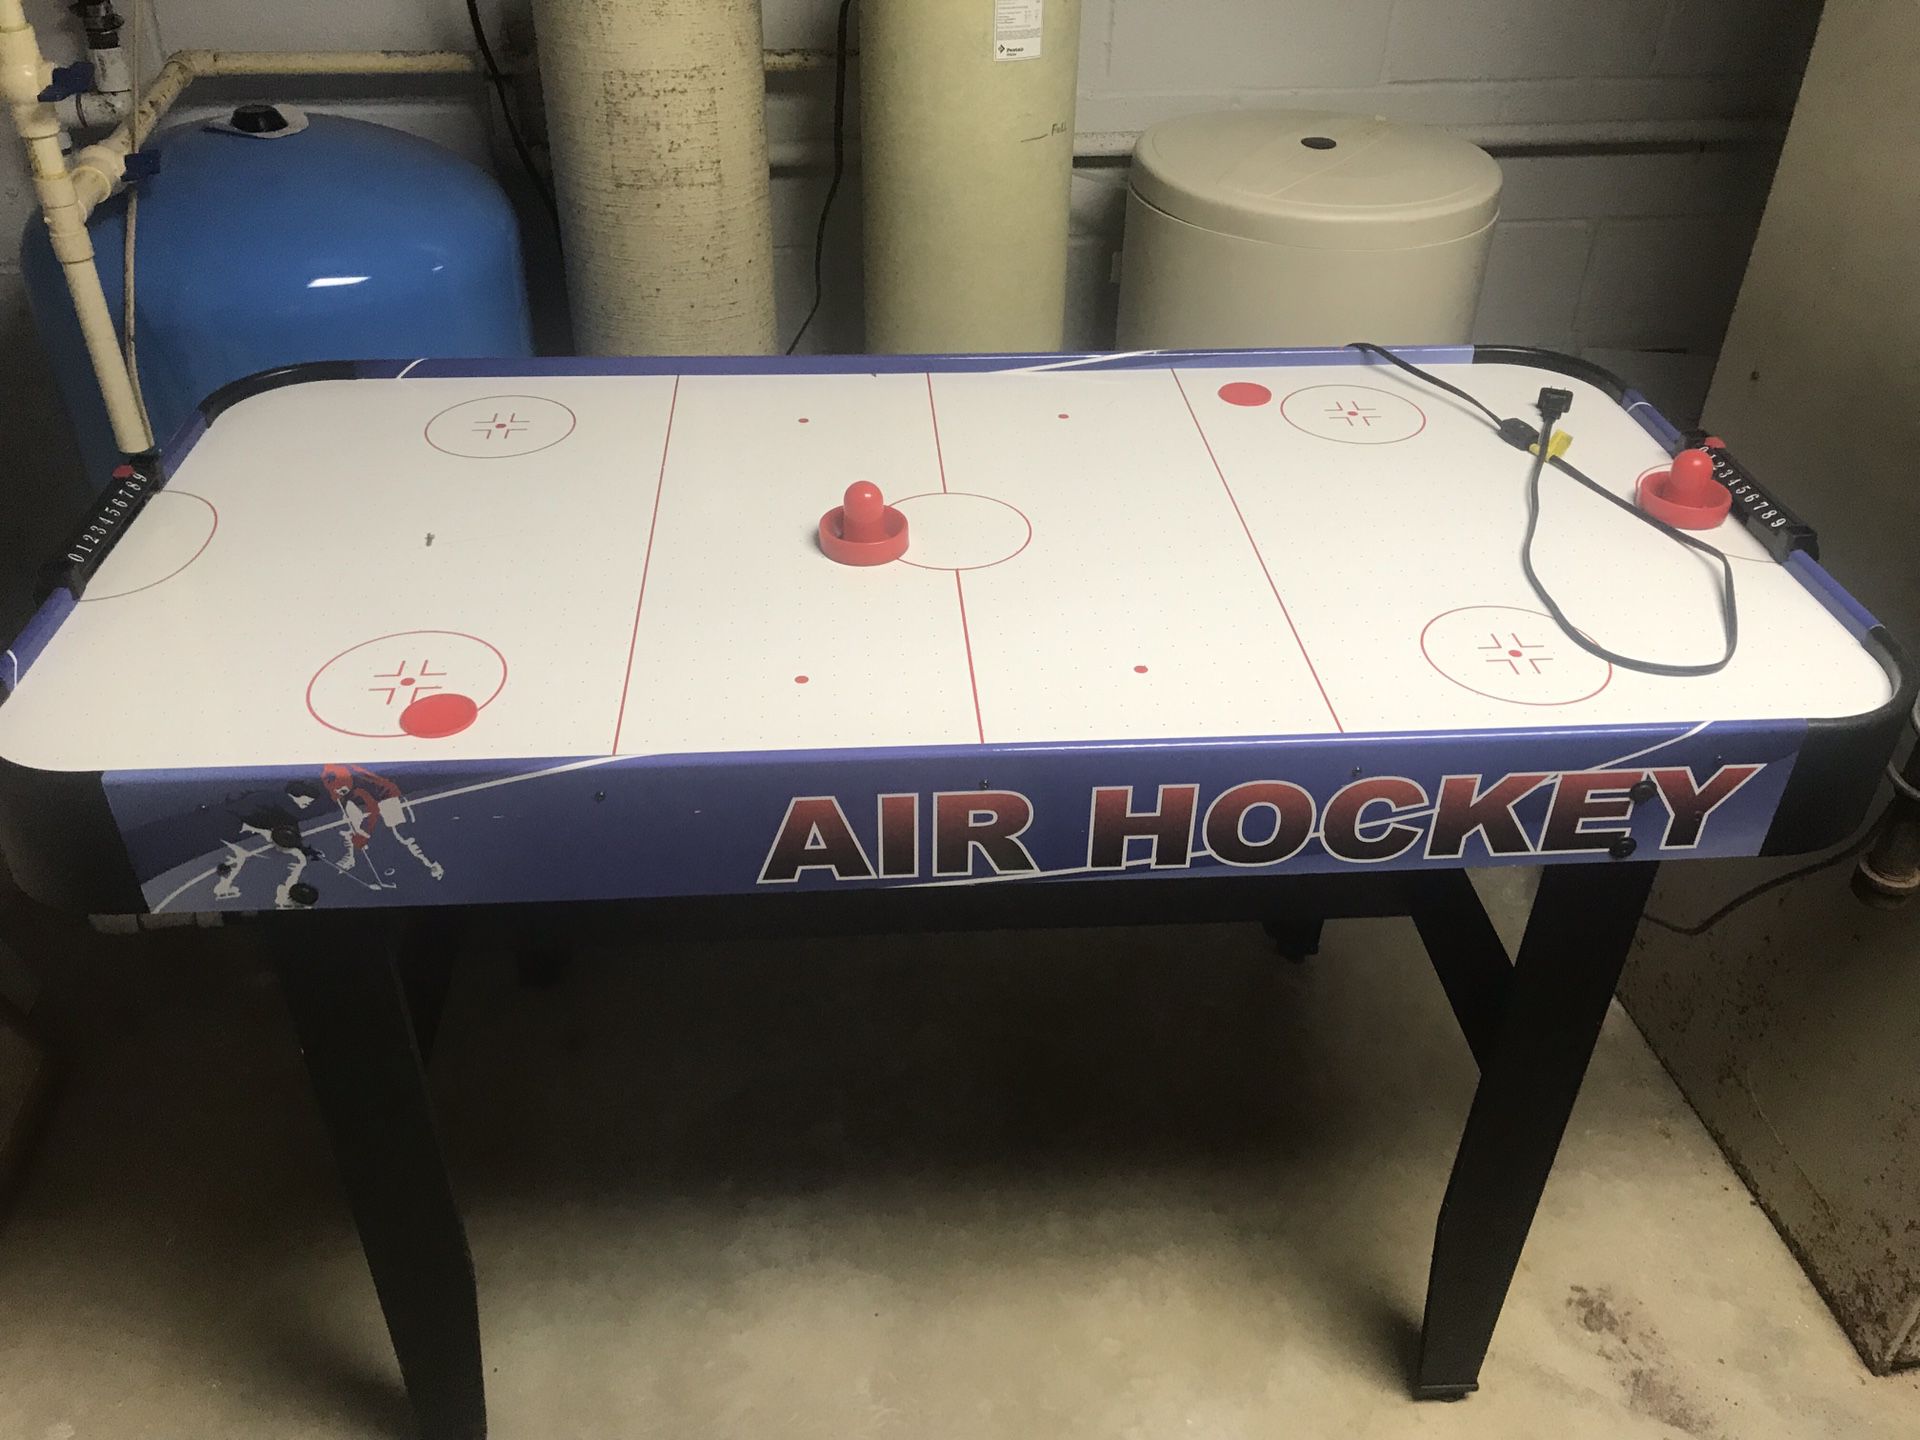 Air hockey Table!